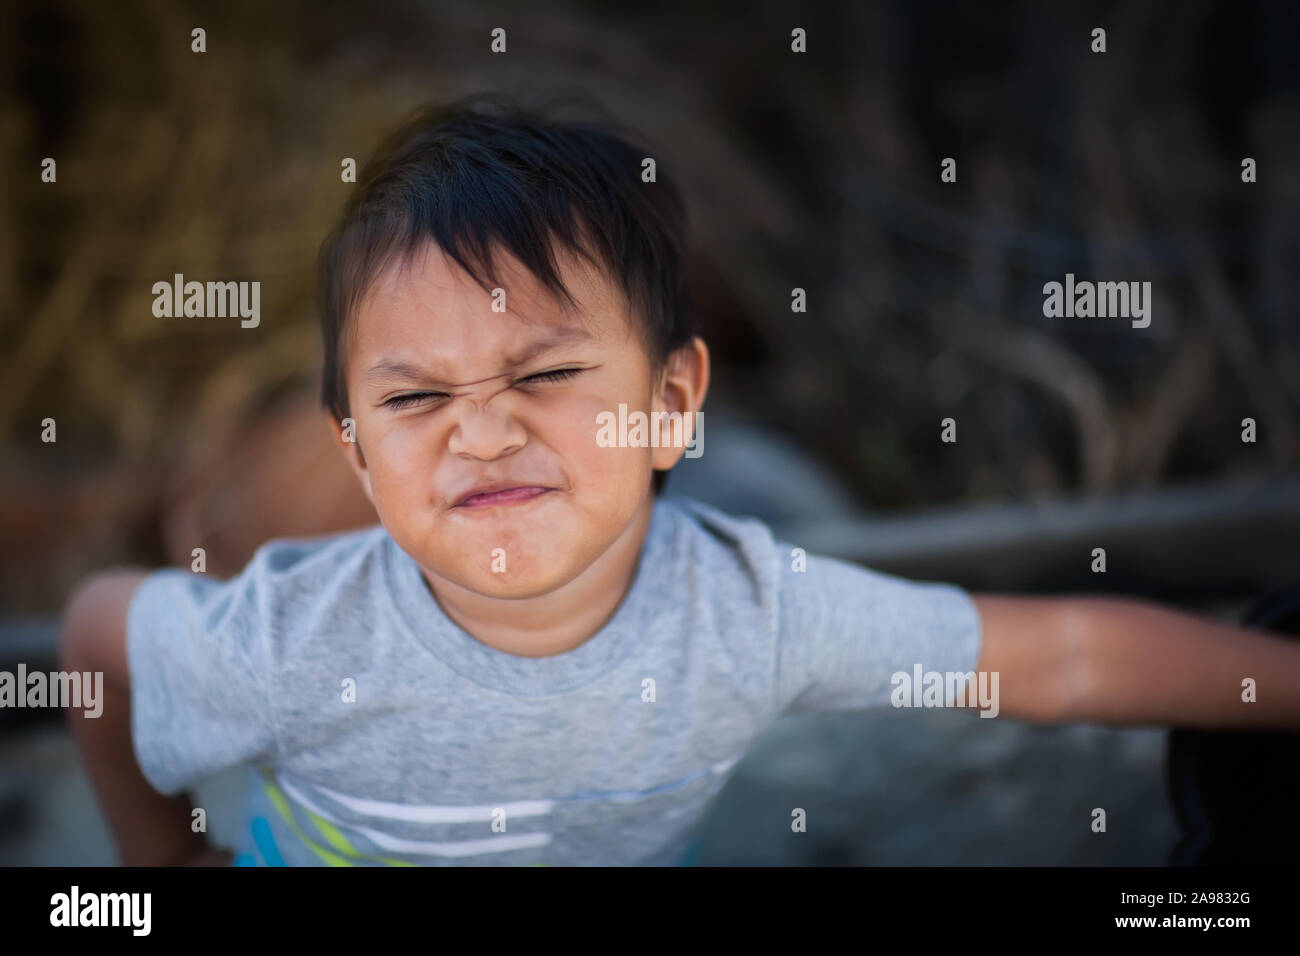 Un niño expresando resentido y actitud poco cooperativa haciendo un malestar cara y postura corporal de confrontación. Foto de stock